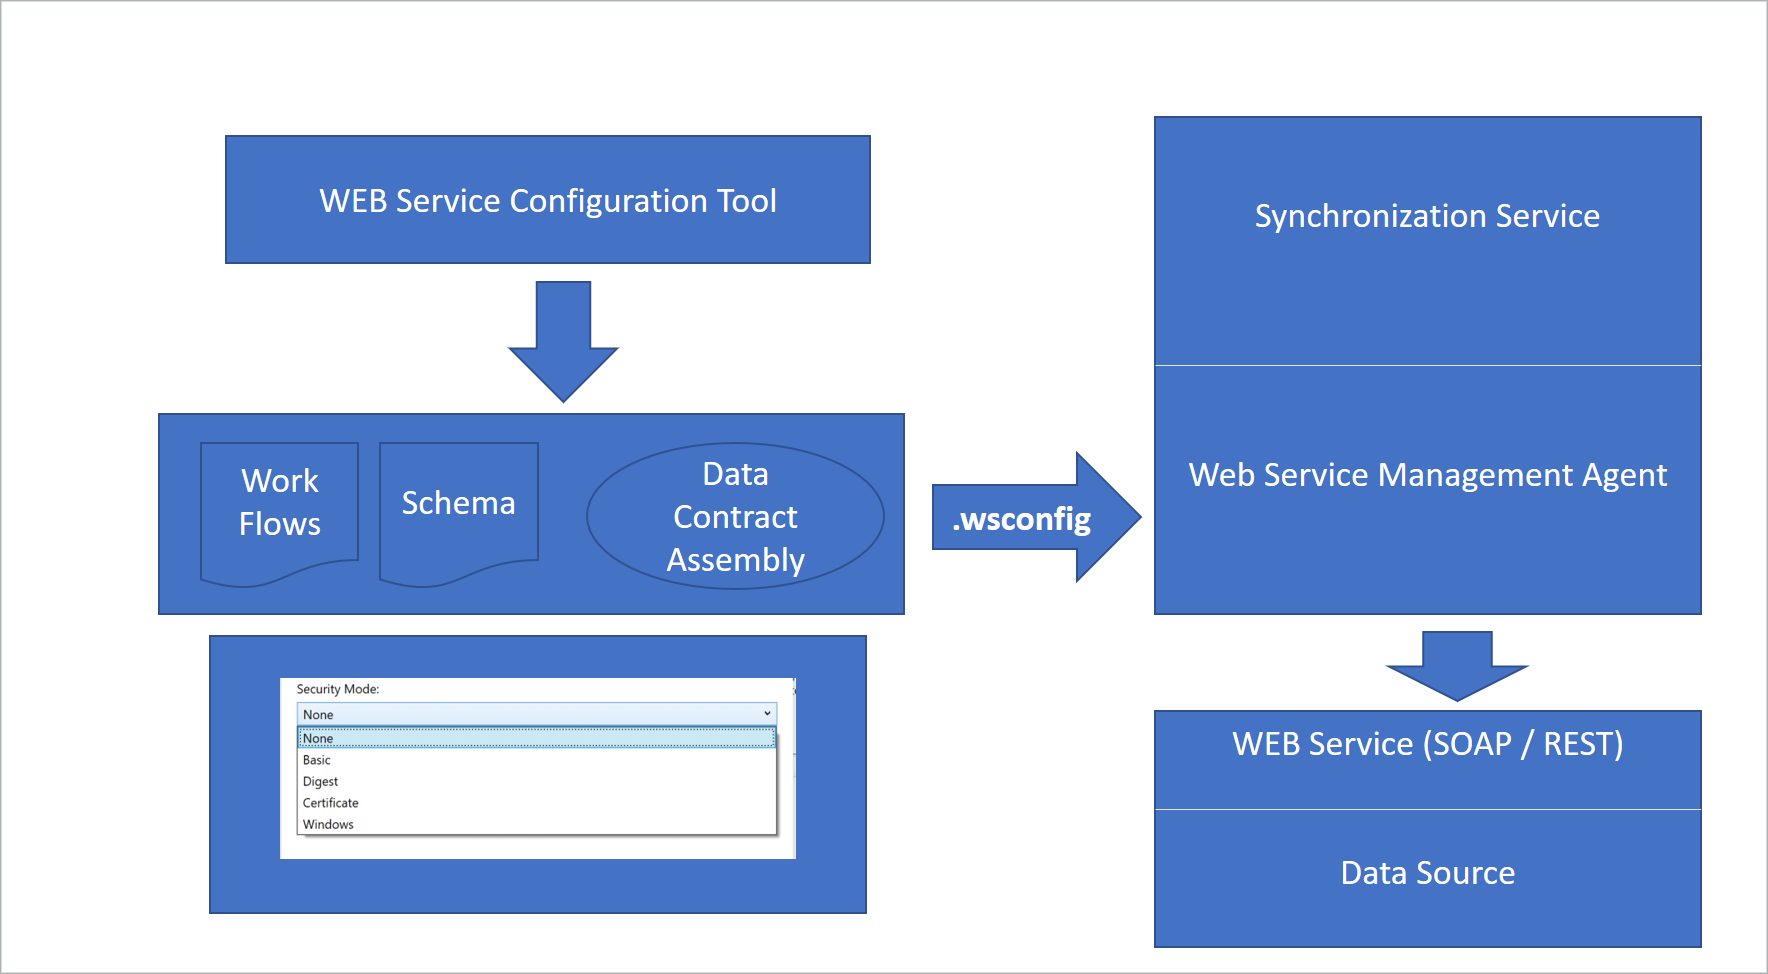 Criação de fluxo de trabalho de um ficheiro .wsconfig pela ferramenta de configuração de serviços Web para utilização pelo agente de gestão de serviços Web